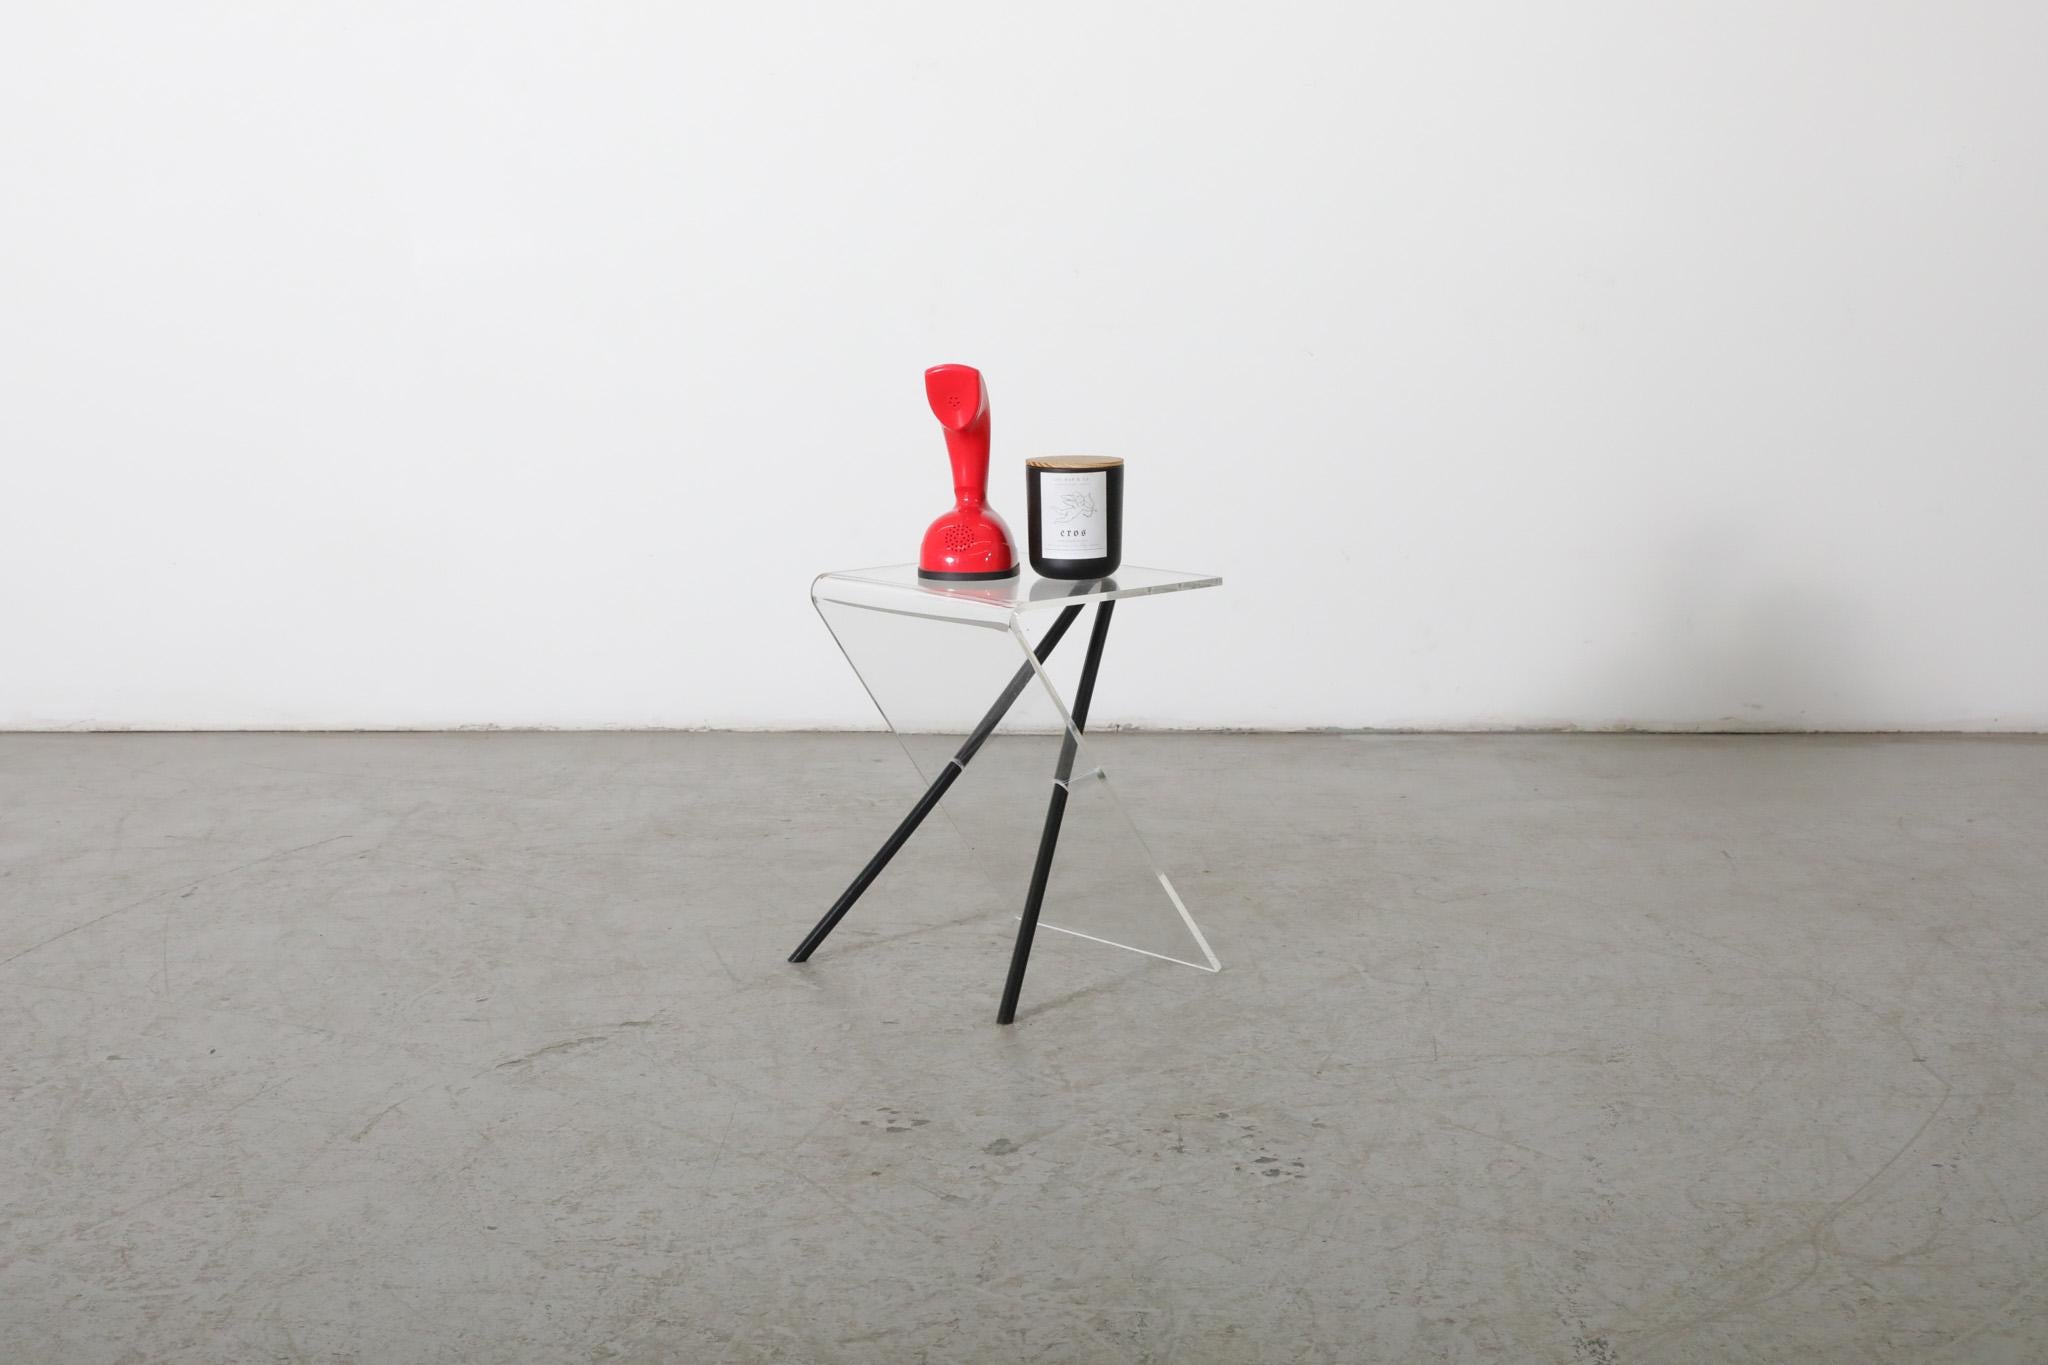 MOD, von Ettore Sottsass inspirierter Beistelltisch aus klarem Acryl mit schwarzen Beinen. Ein minimalistischer und eleganter Materialmix, der zu einem attraktiven, unkonventionellen Beistelltisch verarbeitet wurde. Im Originalzustand mit alters-